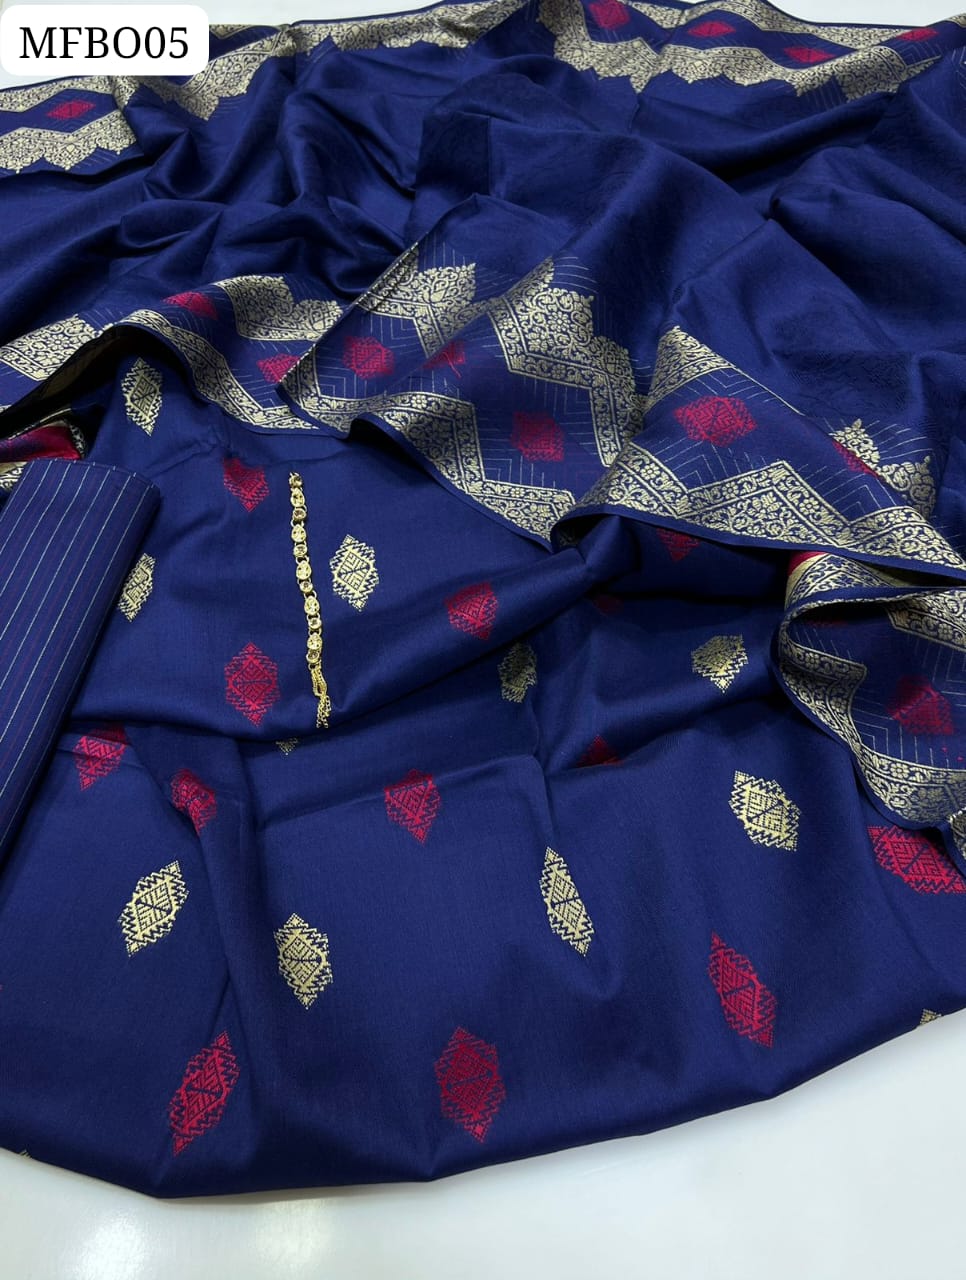 Jamawar Banarsi Work Shirt With Jamawar Banarsi Jucard Dupatta And Line Desgin Trouser 3Pc Dress